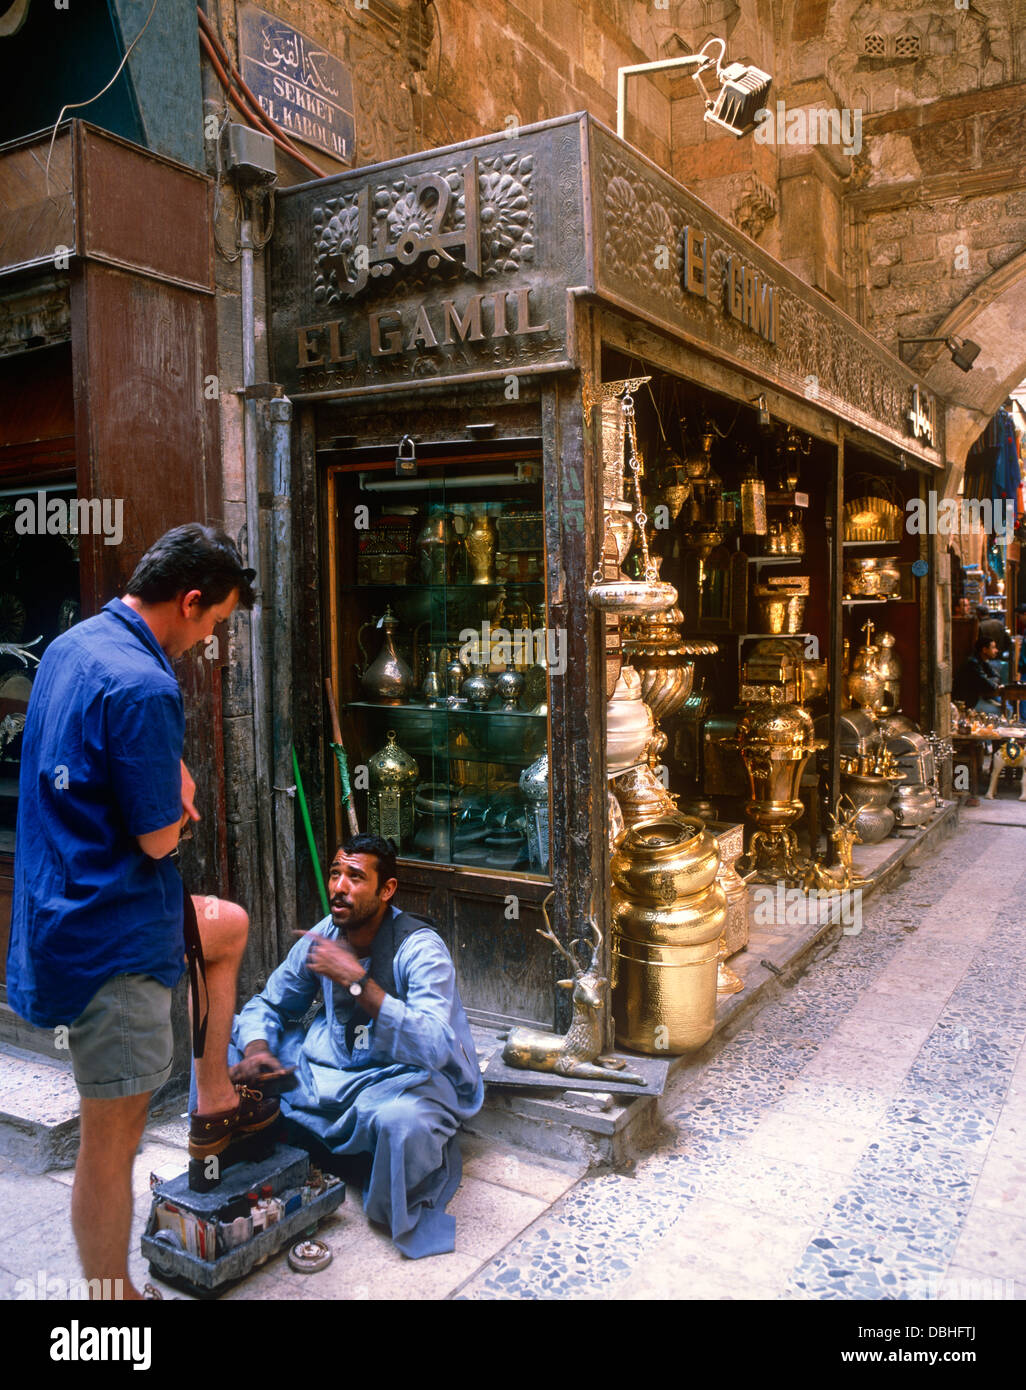 Khan el-Khalili Bazaar, Cairo, Egypt Stock Photo